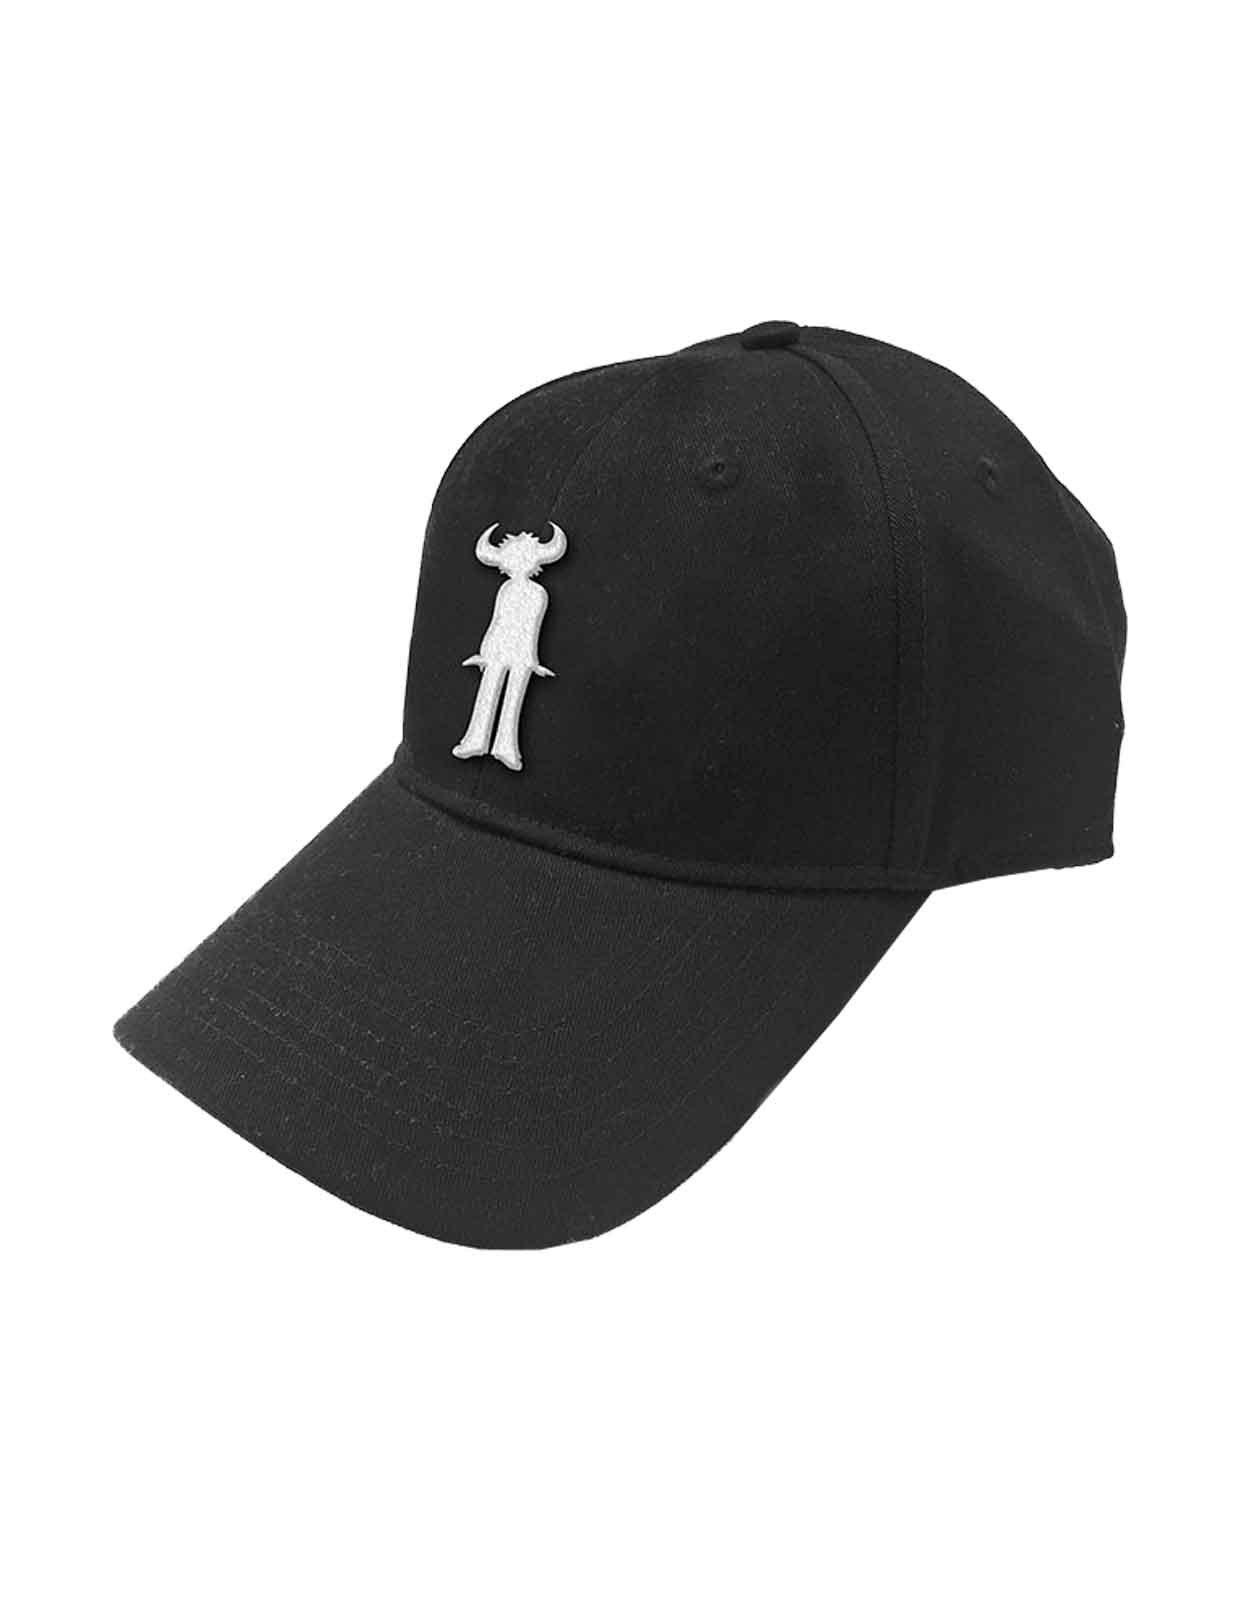 Бейсбольная кепка Snapback с логотипом группы Jam, черный